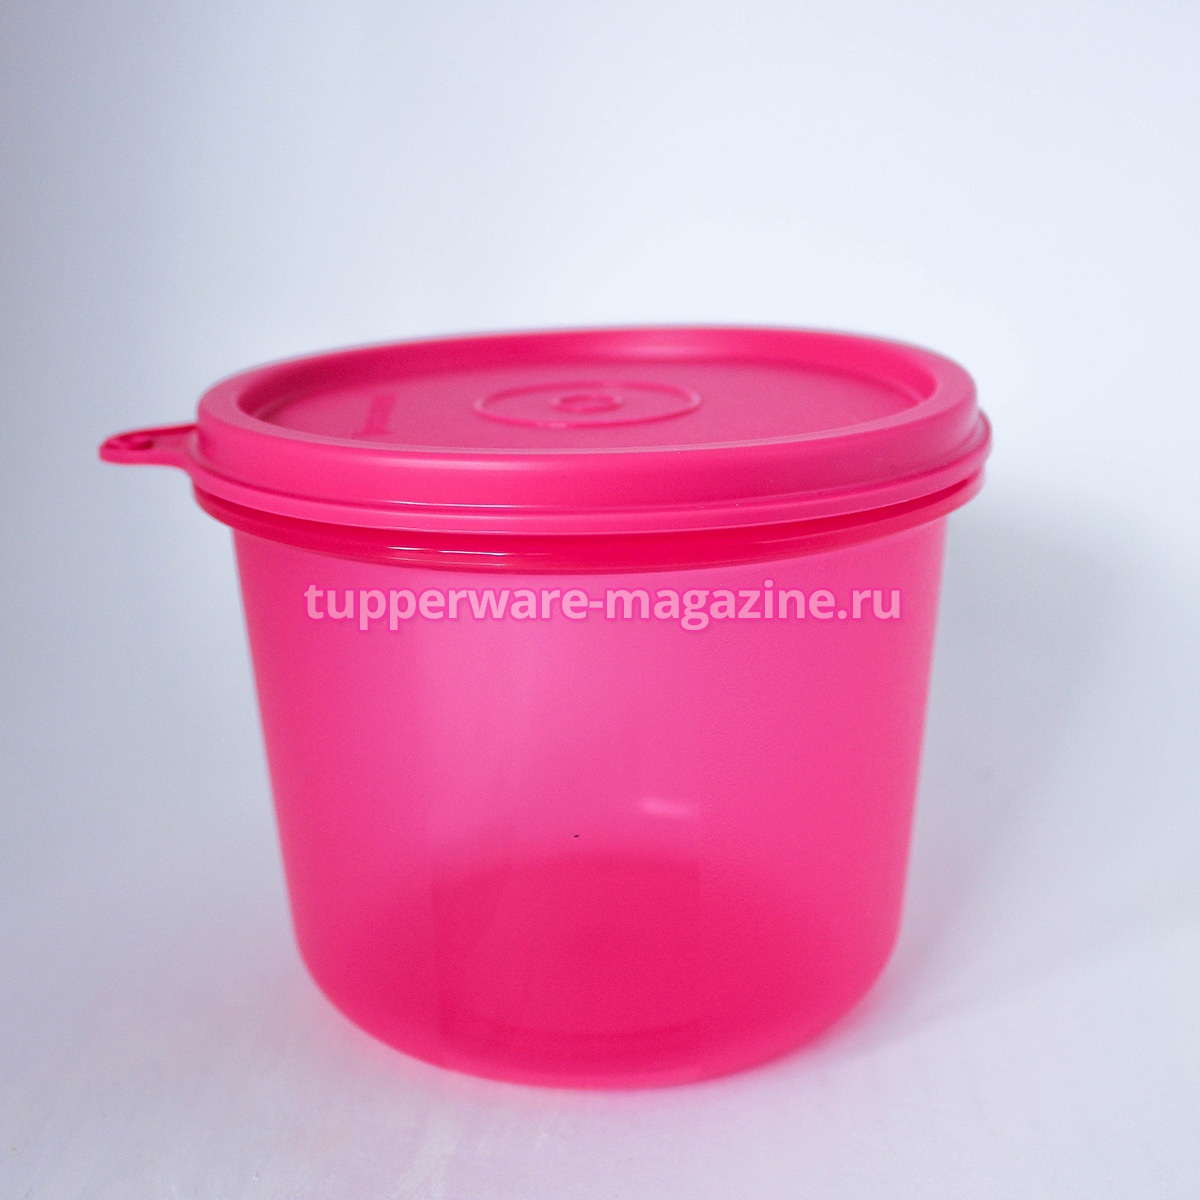 Чаша "Шик" 550 мл в розовом цвете